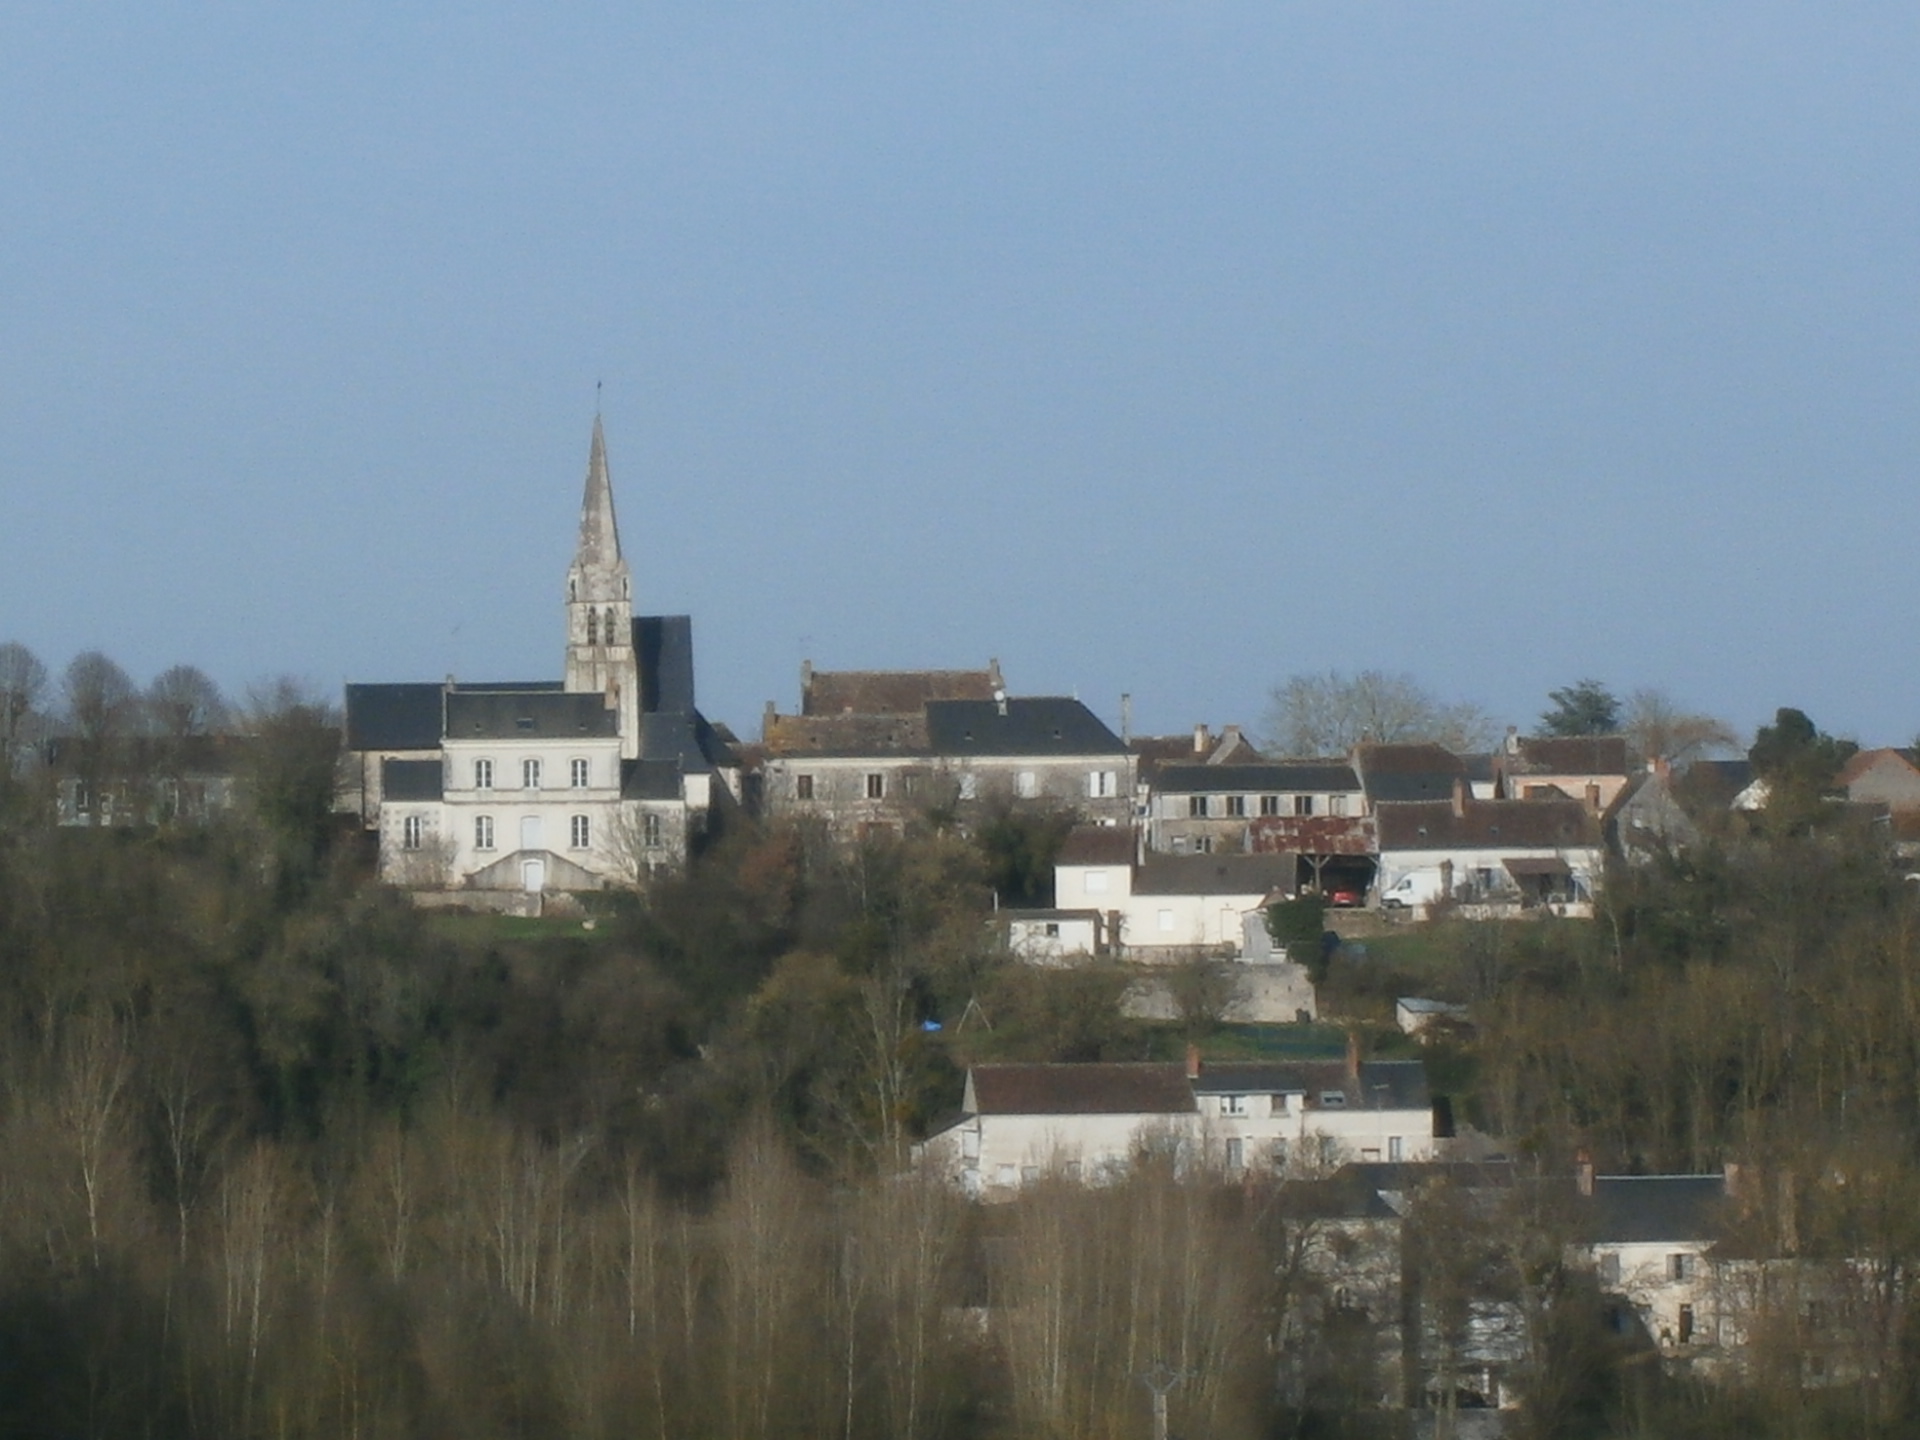 Saint-quentin-sur-indrois